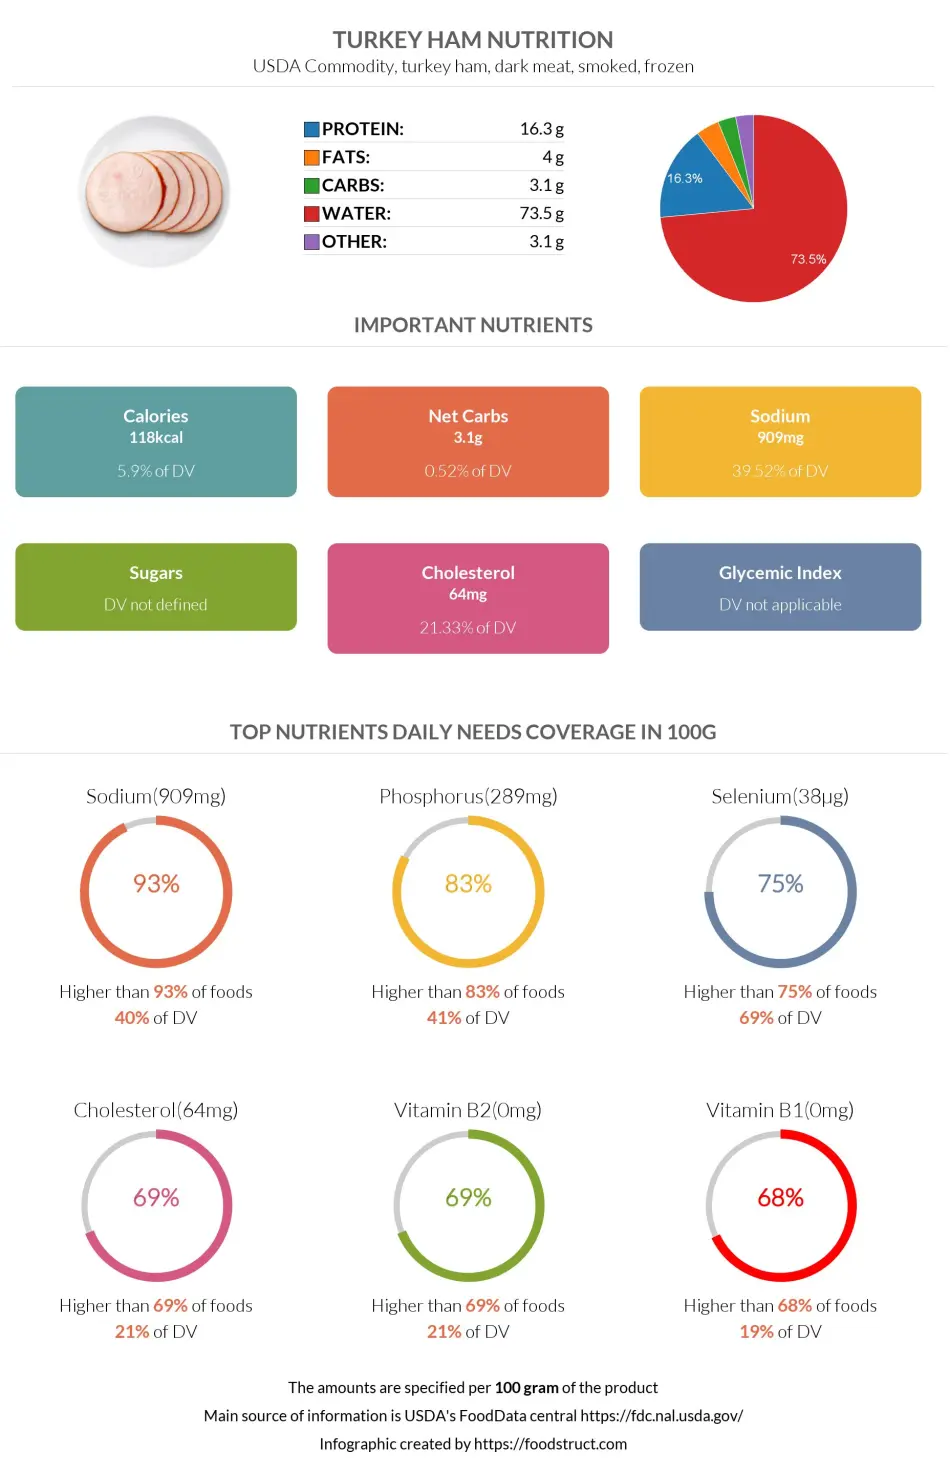 Turkey ham nutrition infographic